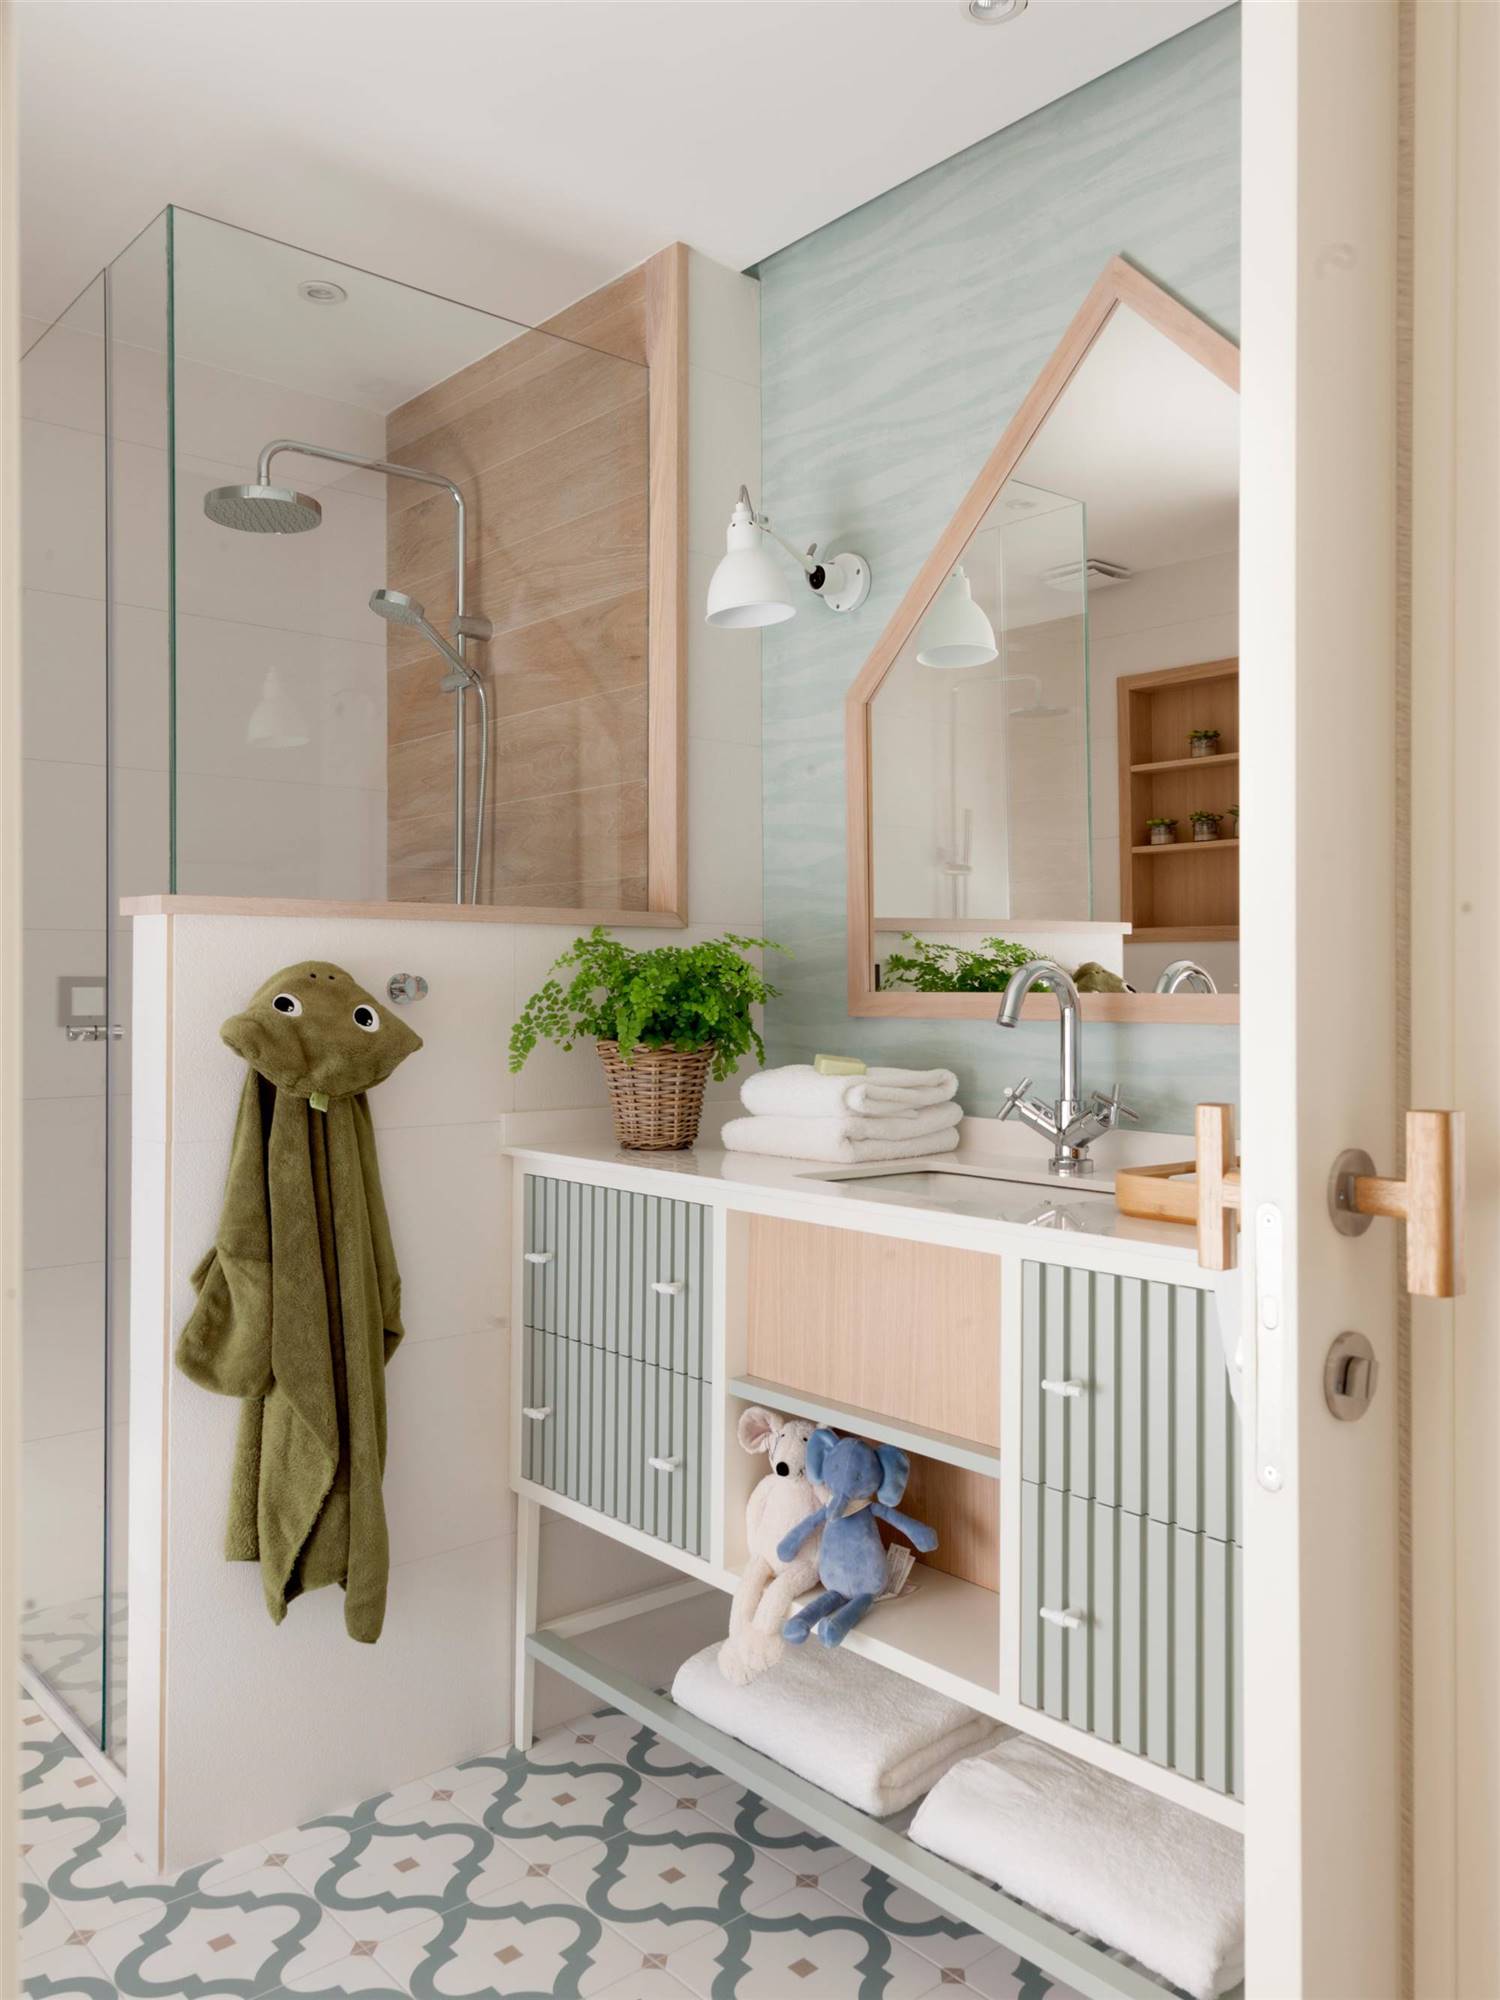 Baño infantil con espejo con forma de casita, mueble a rayas en gris y pared gris verdosa.